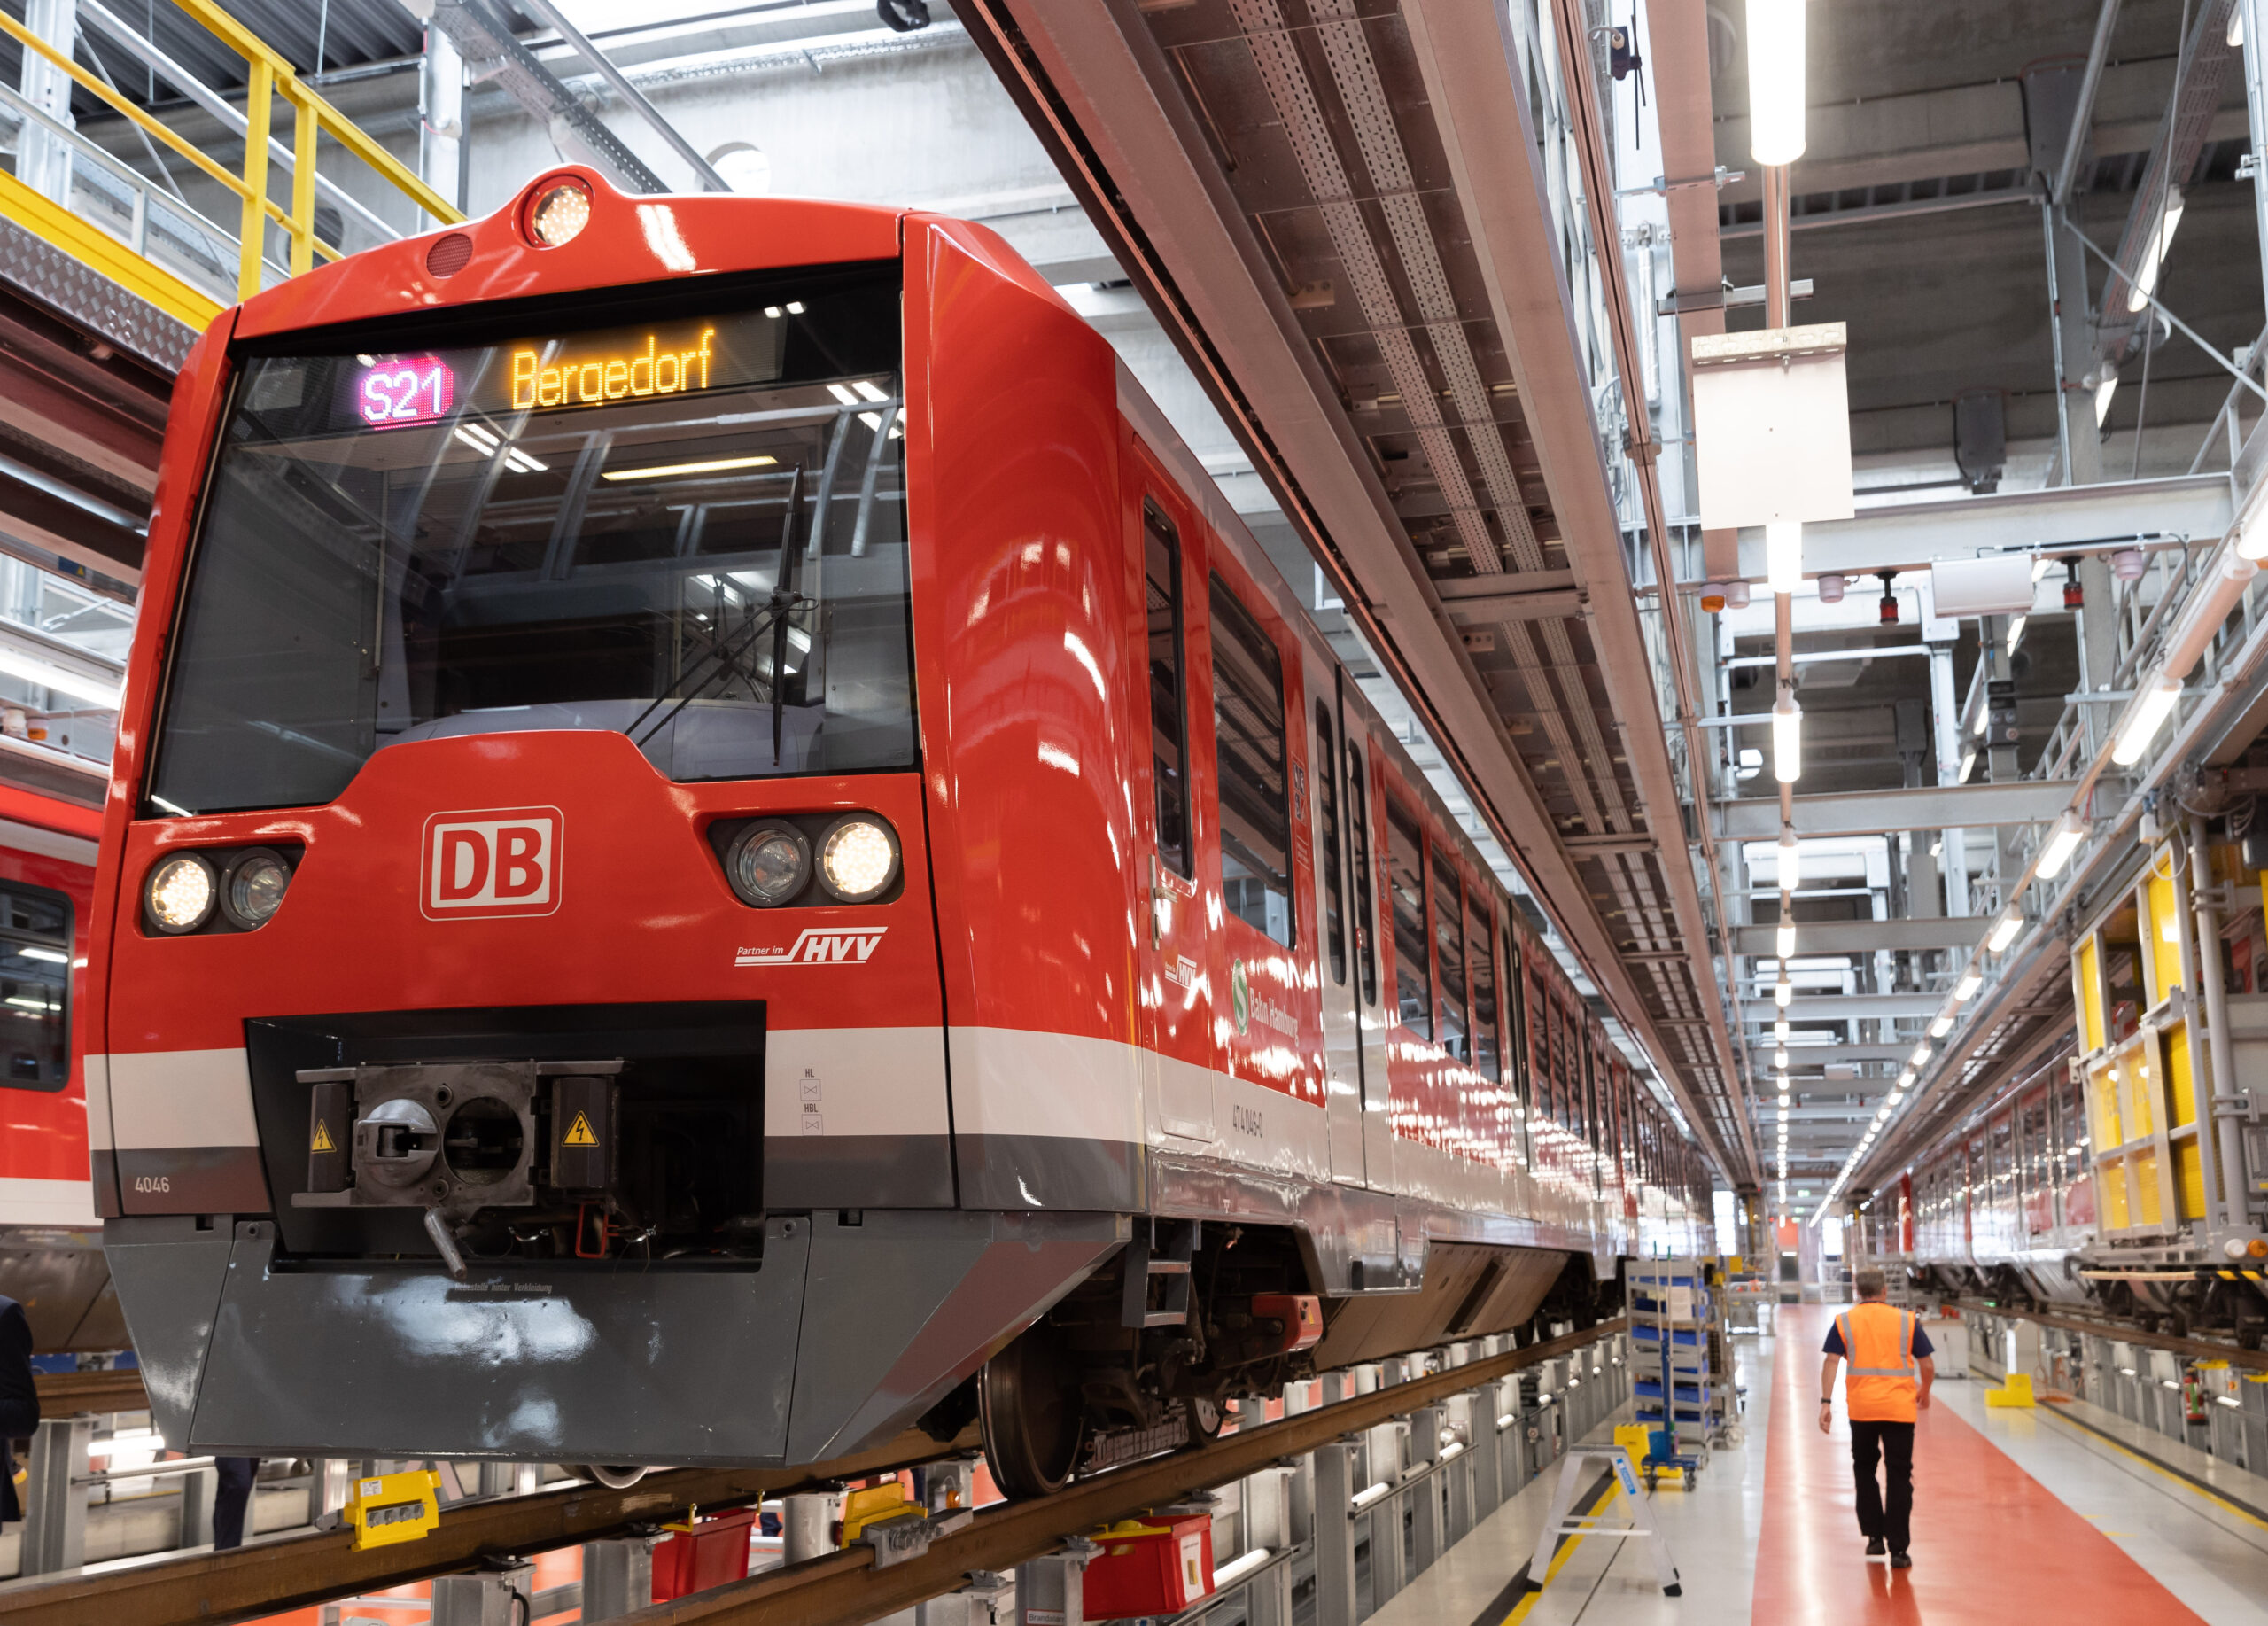 Ein umgebauter Zug des Pilotprojektes "Digitale S-Bahn Hamburg" steht während einer Presseveranstaltung in einer Halle des S-Bahn-Instandhaltungswerkes in Hamburg. (Archivfoto)